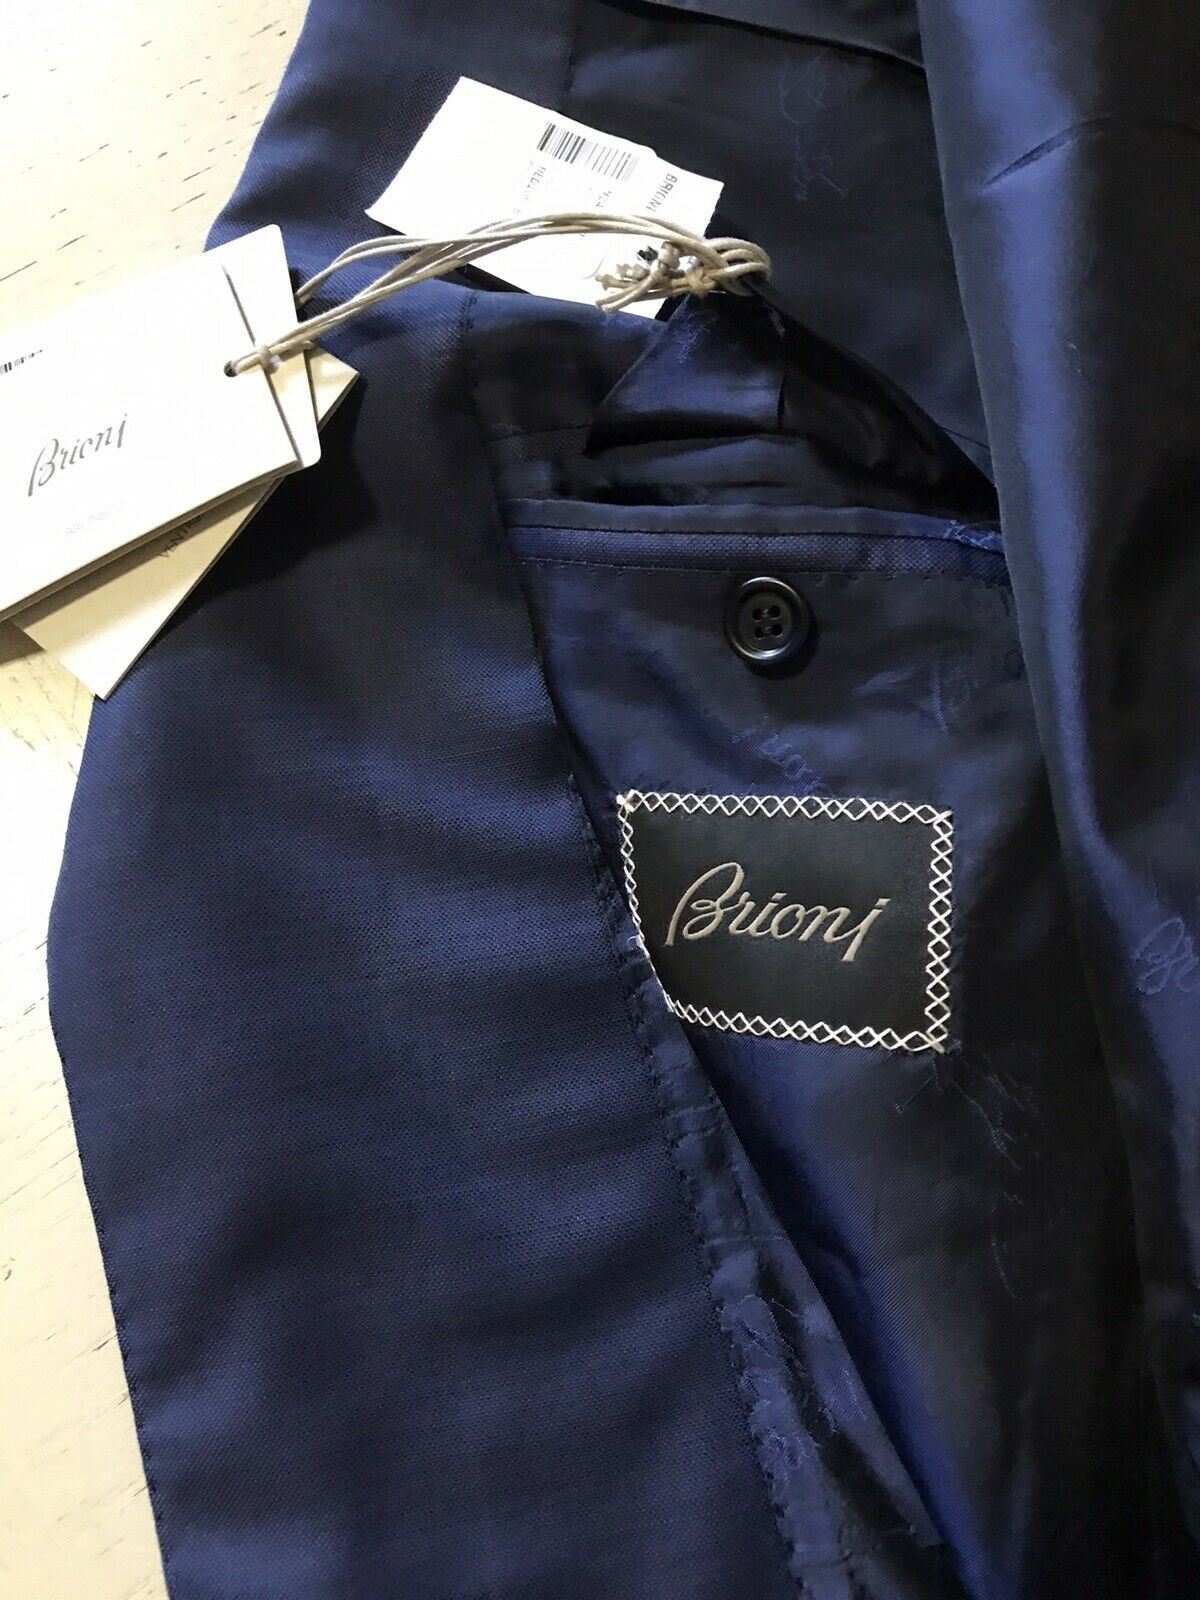 NWT $5700 Brioni Мужское шерстяное спортивное пальто Блейзер Синяя куртка 40R США/50R ЕС Италия